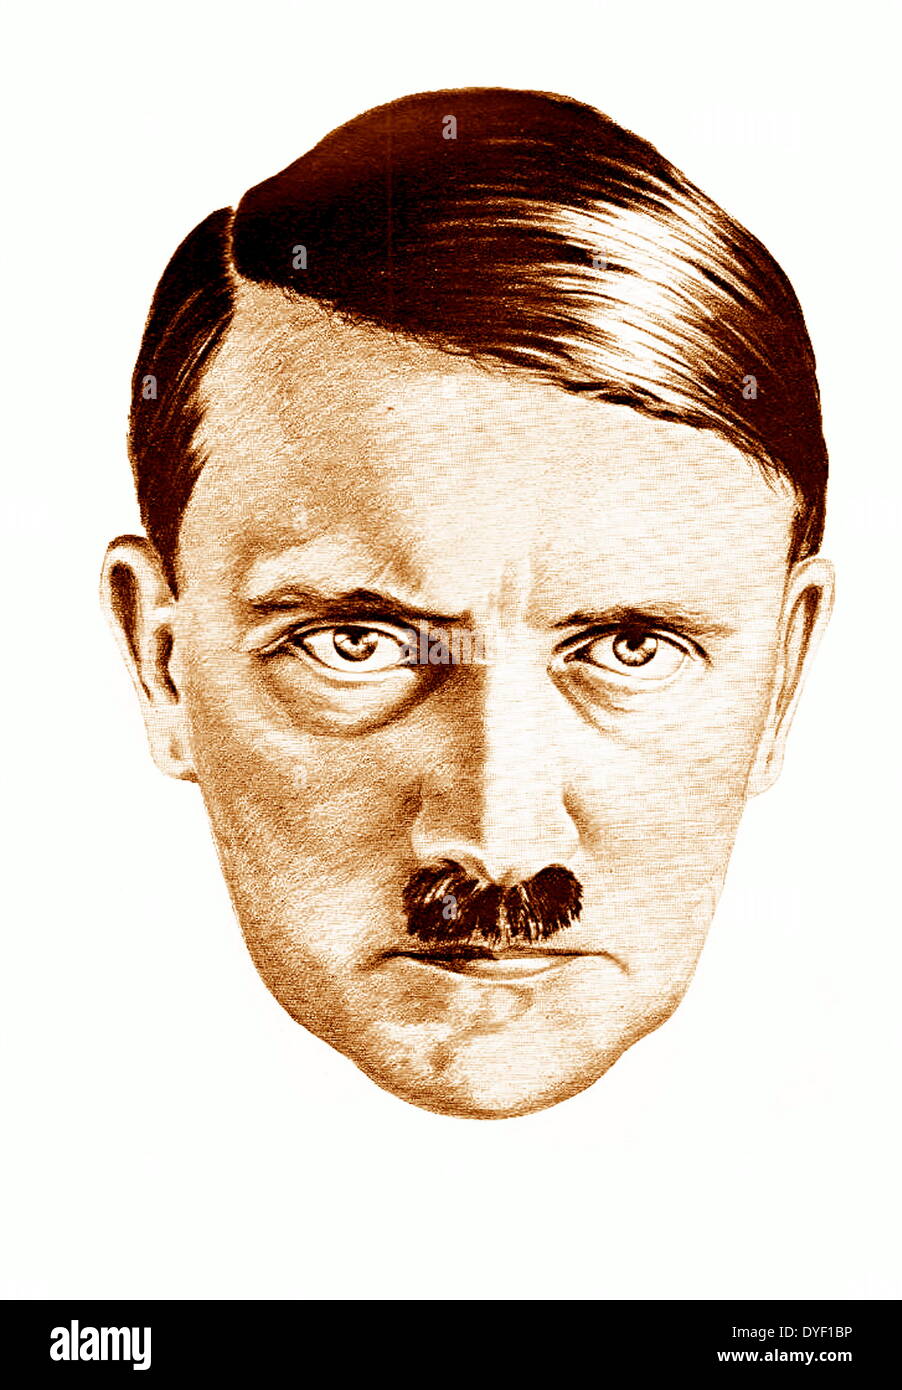 Zeichnung von Adolf Hitler, von H. Oloffs auf Basis einer Hoffmann Foto. Hitler war Führer der Nsdap während des Zweiten Weltkrieges. Stockfoto